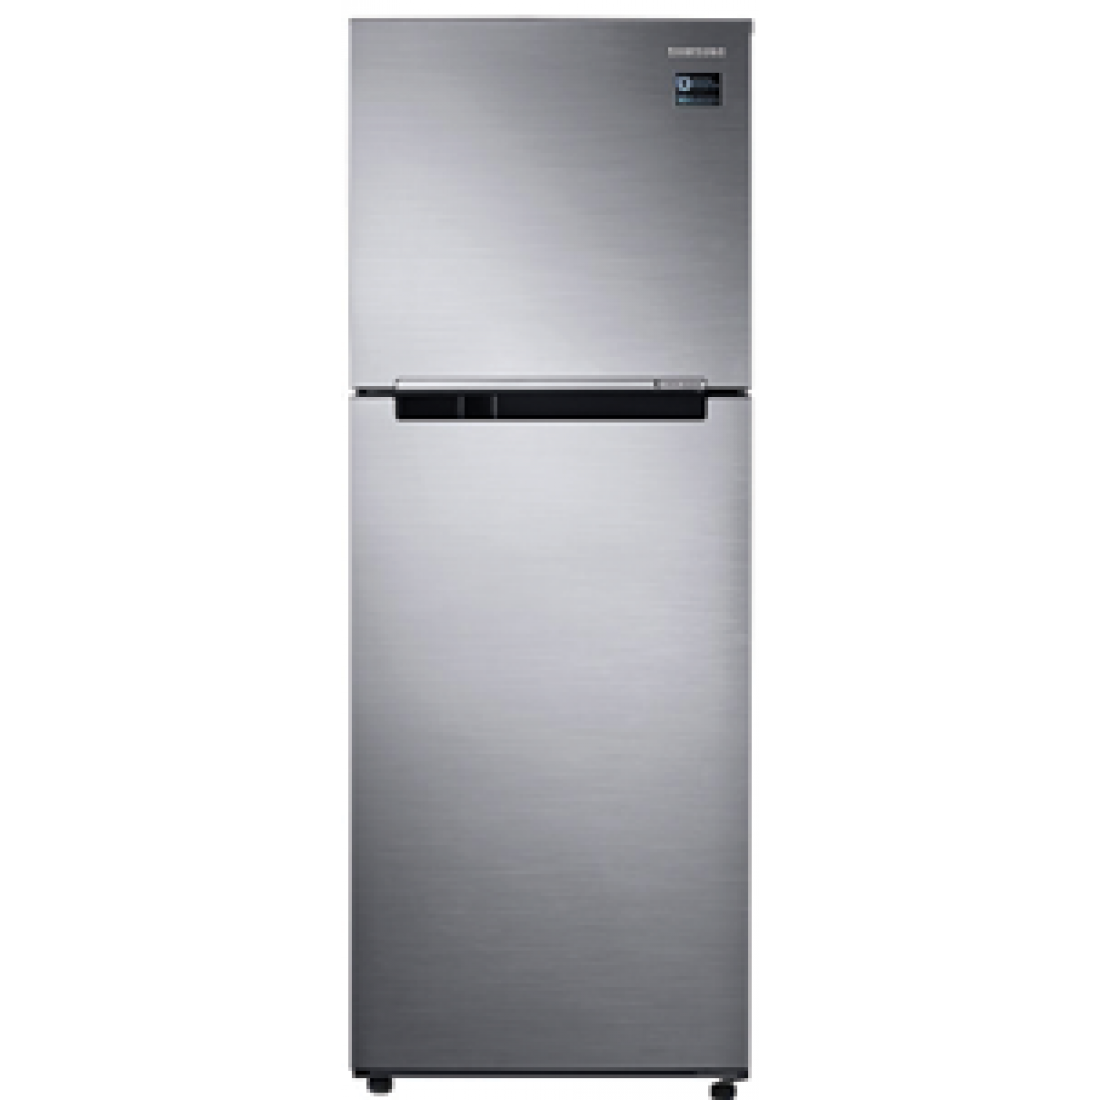 Купить холодильник 5 элемент. Холодильник Samsung RT-22 har4dsa, серебристый. Samsung RT-25 har4dww. Холодильник Samsung RT 22 har4dsawt. Samsung rt43k6000s8/WT.